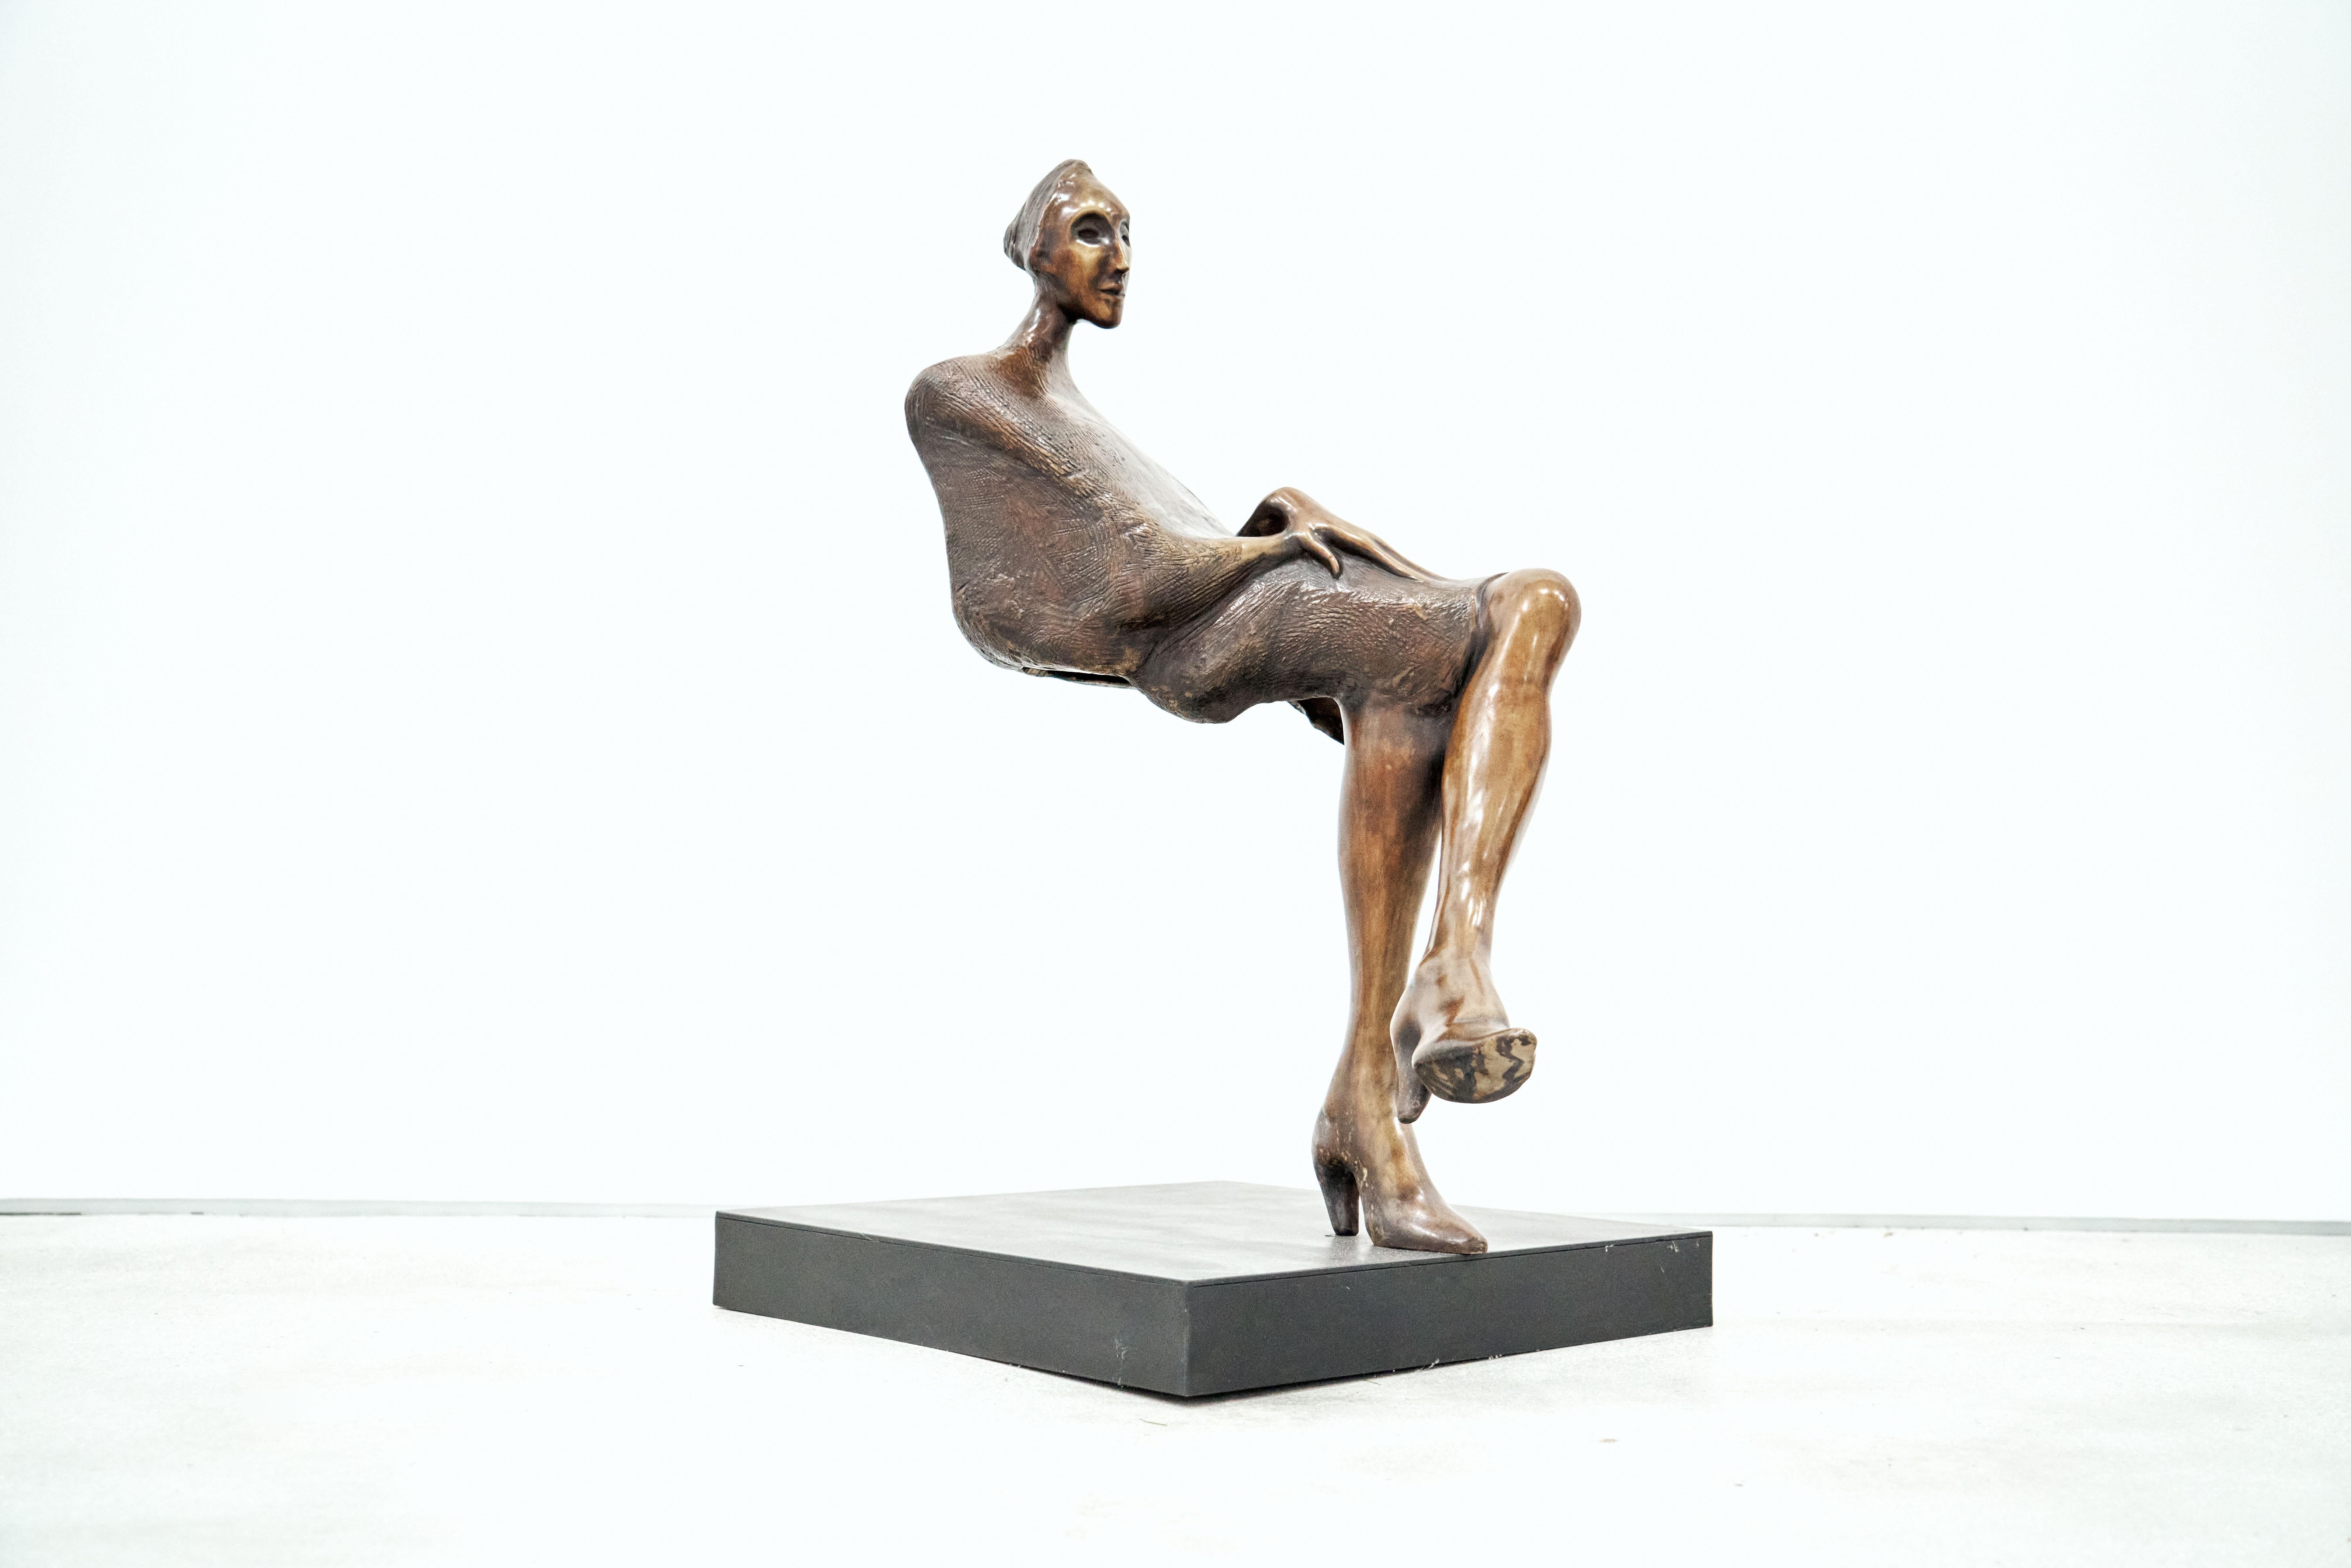  Jorge Seguí,  Ilusion silla, 2000, Bronze, Edition of 7, 78 x 90 x 33 cm  - Sculpture by Jorge Seguí 